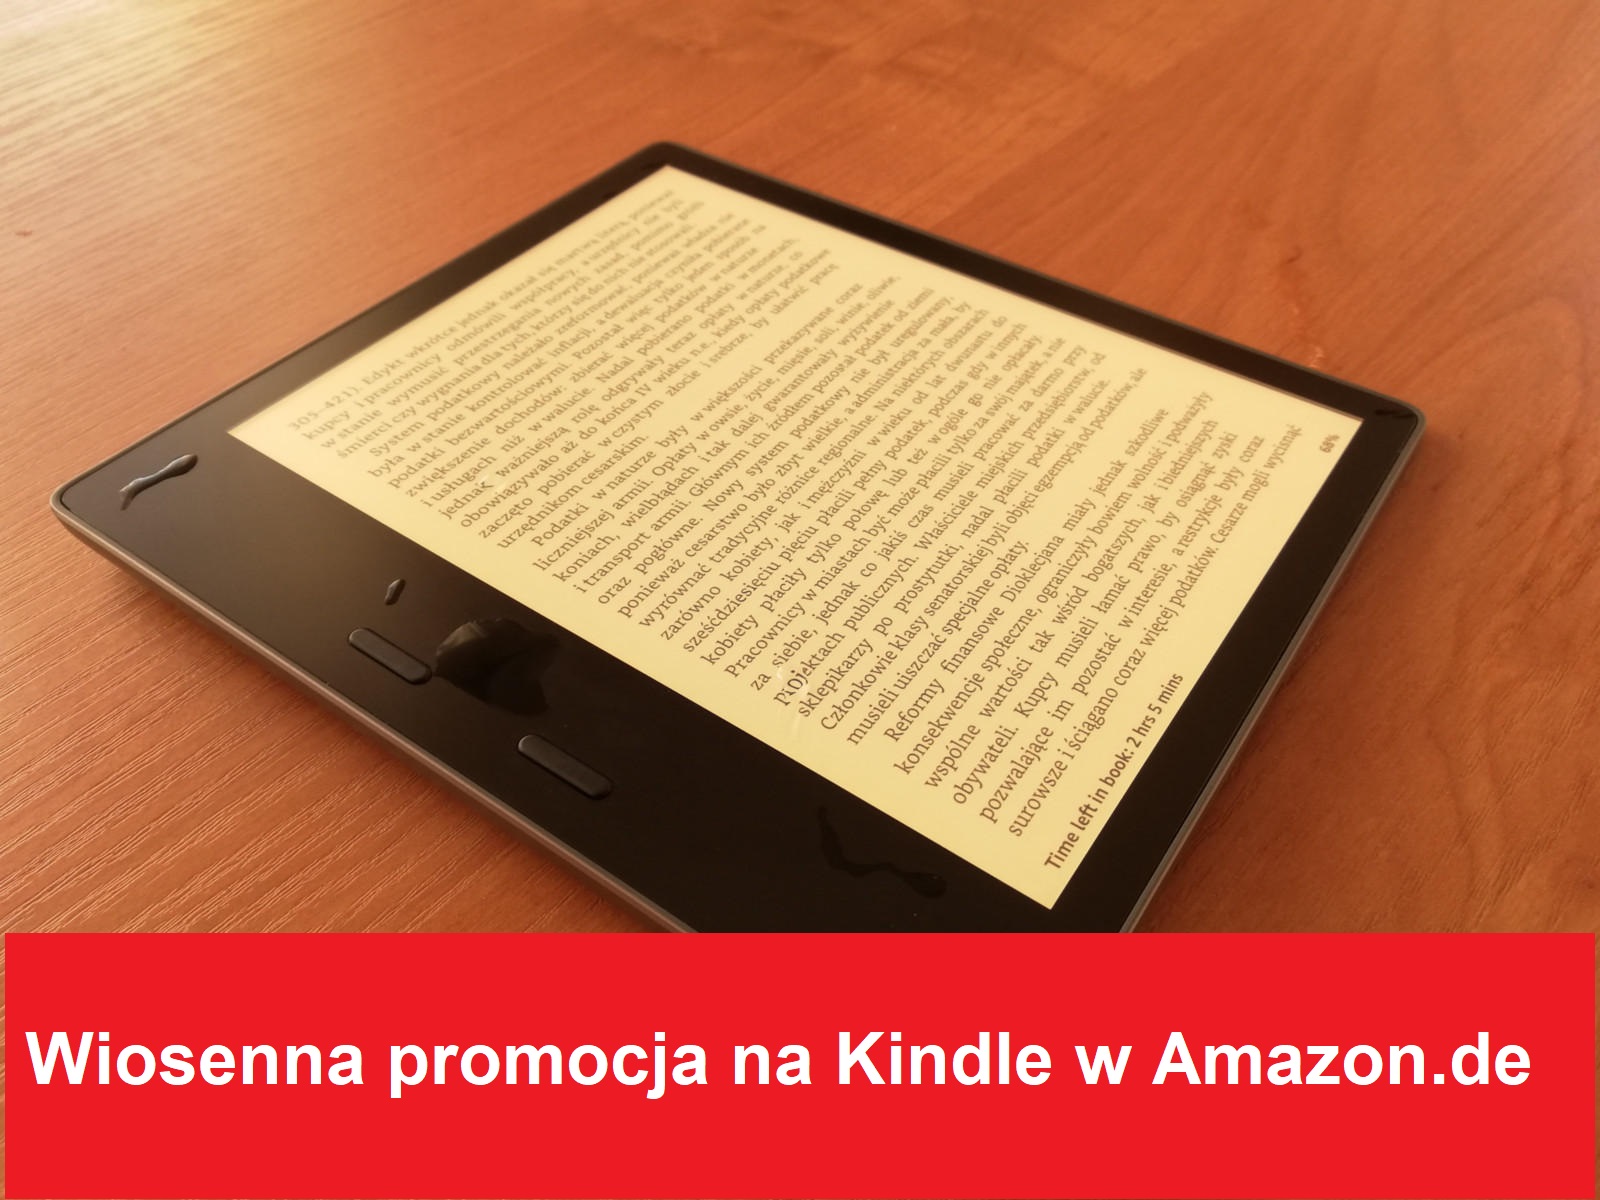 Wiosenna promocja na Kindle w Amazon.de